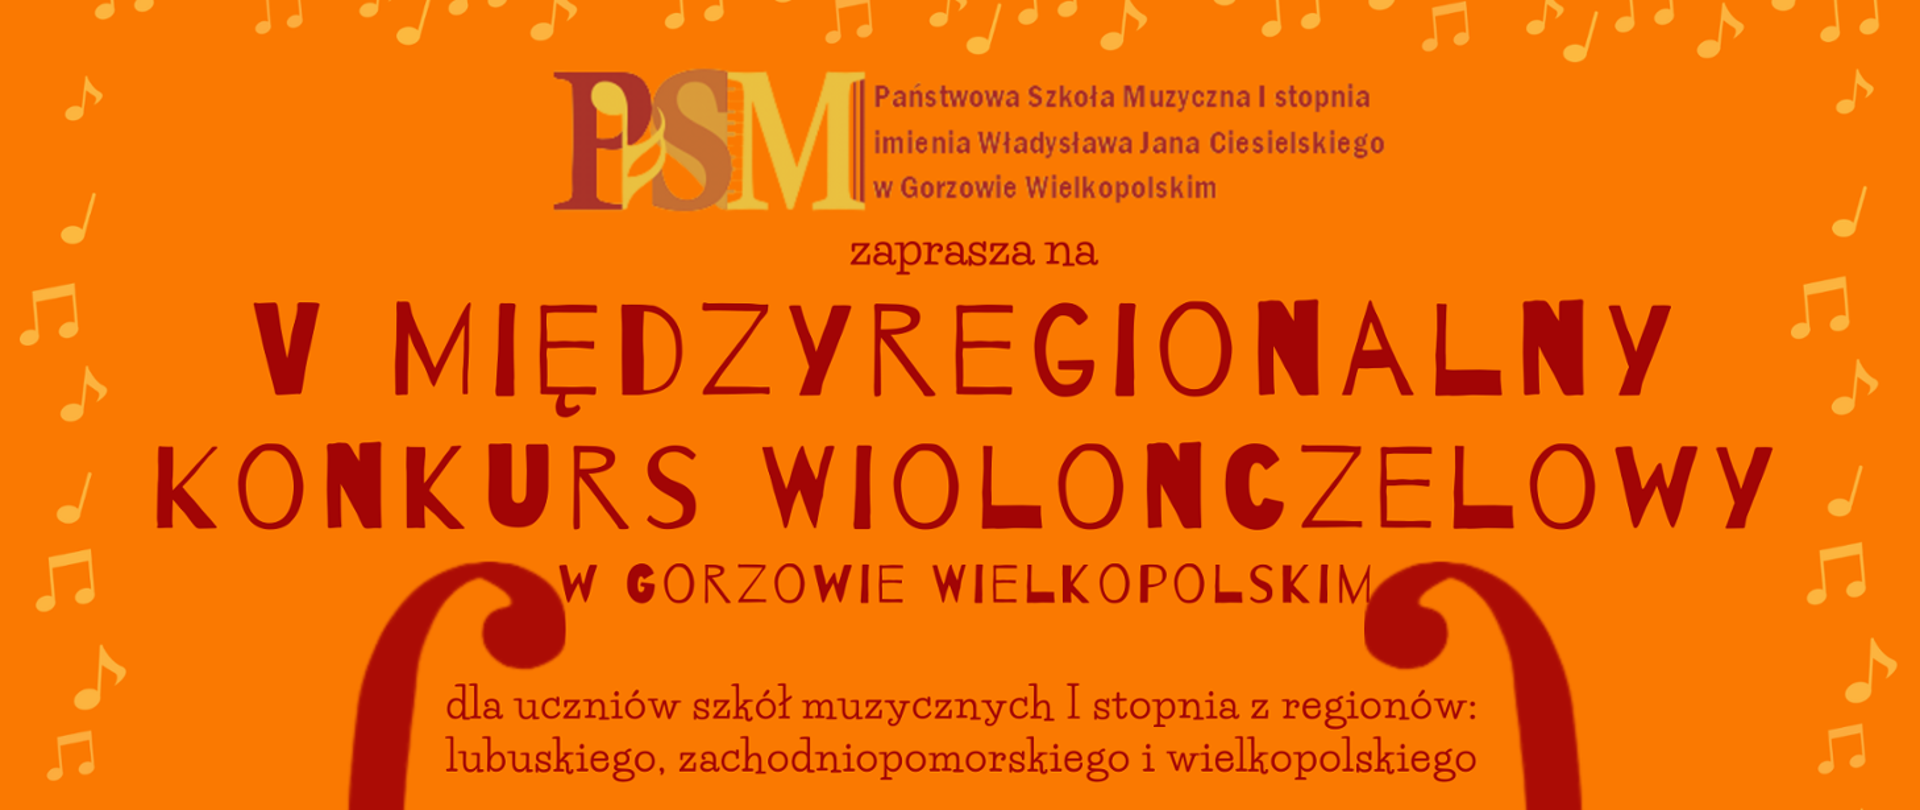 Pomarańczowe tło otoczone żółtymi nutami z Logo szkoły i napisem V Międzyregionalny Konkurs Wiolonczelowy
